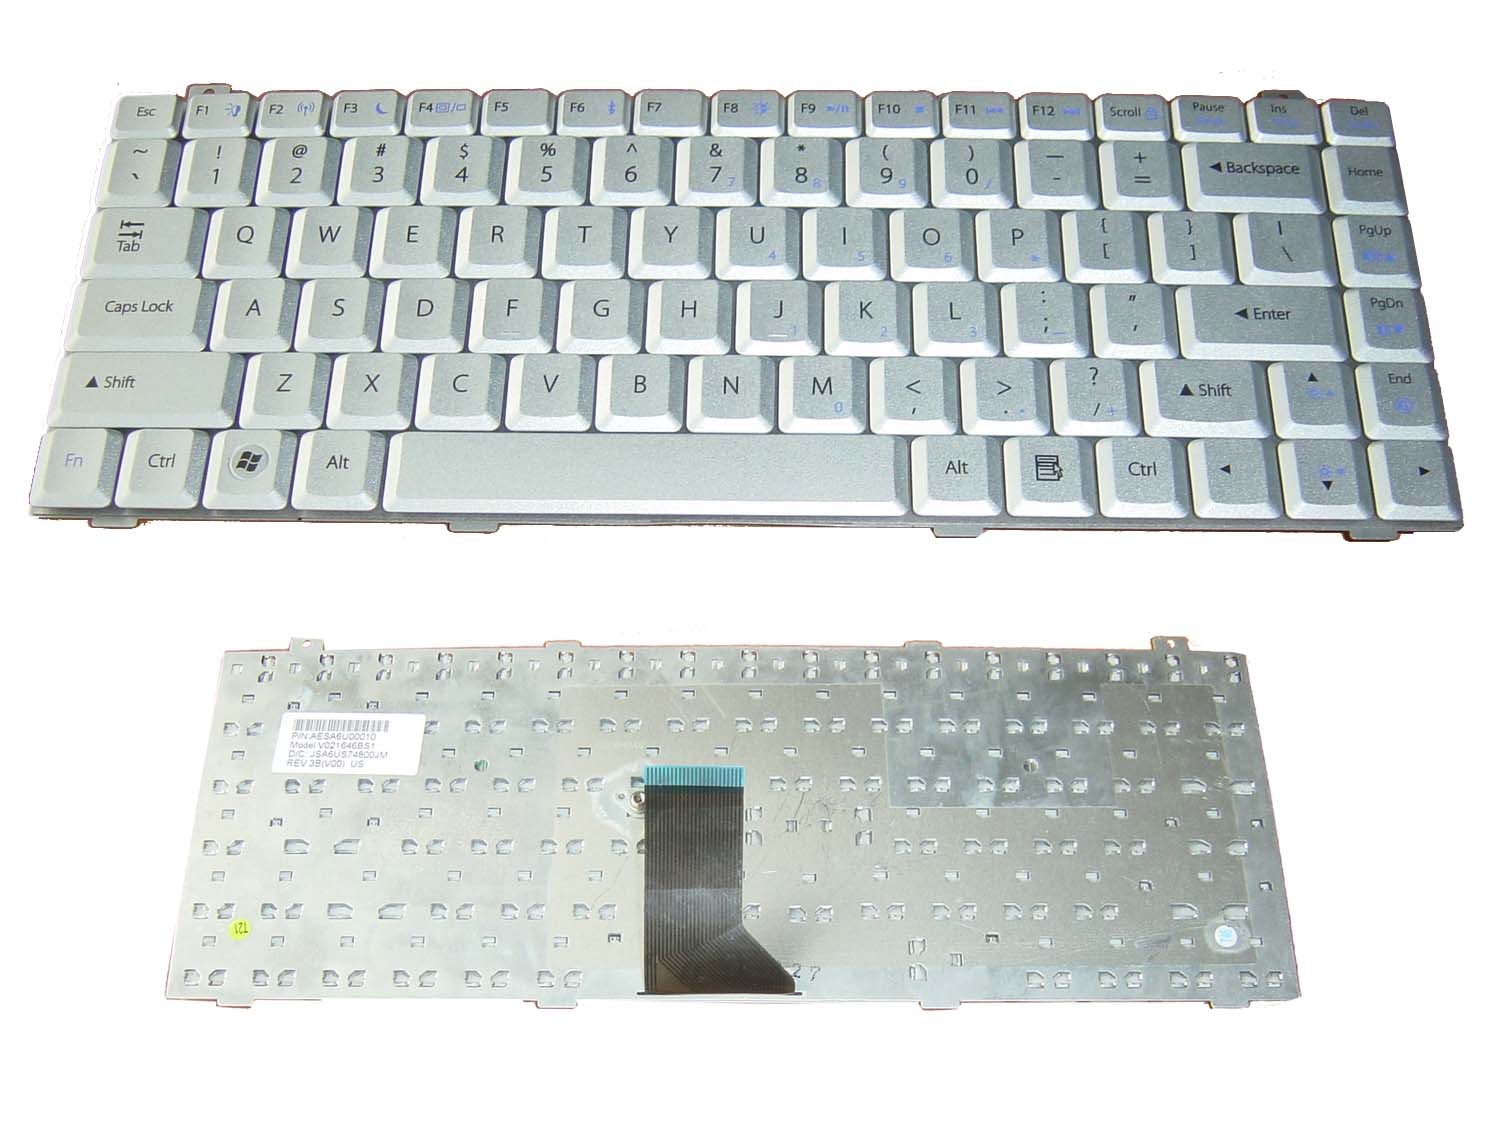 Laptop Keyboard Images